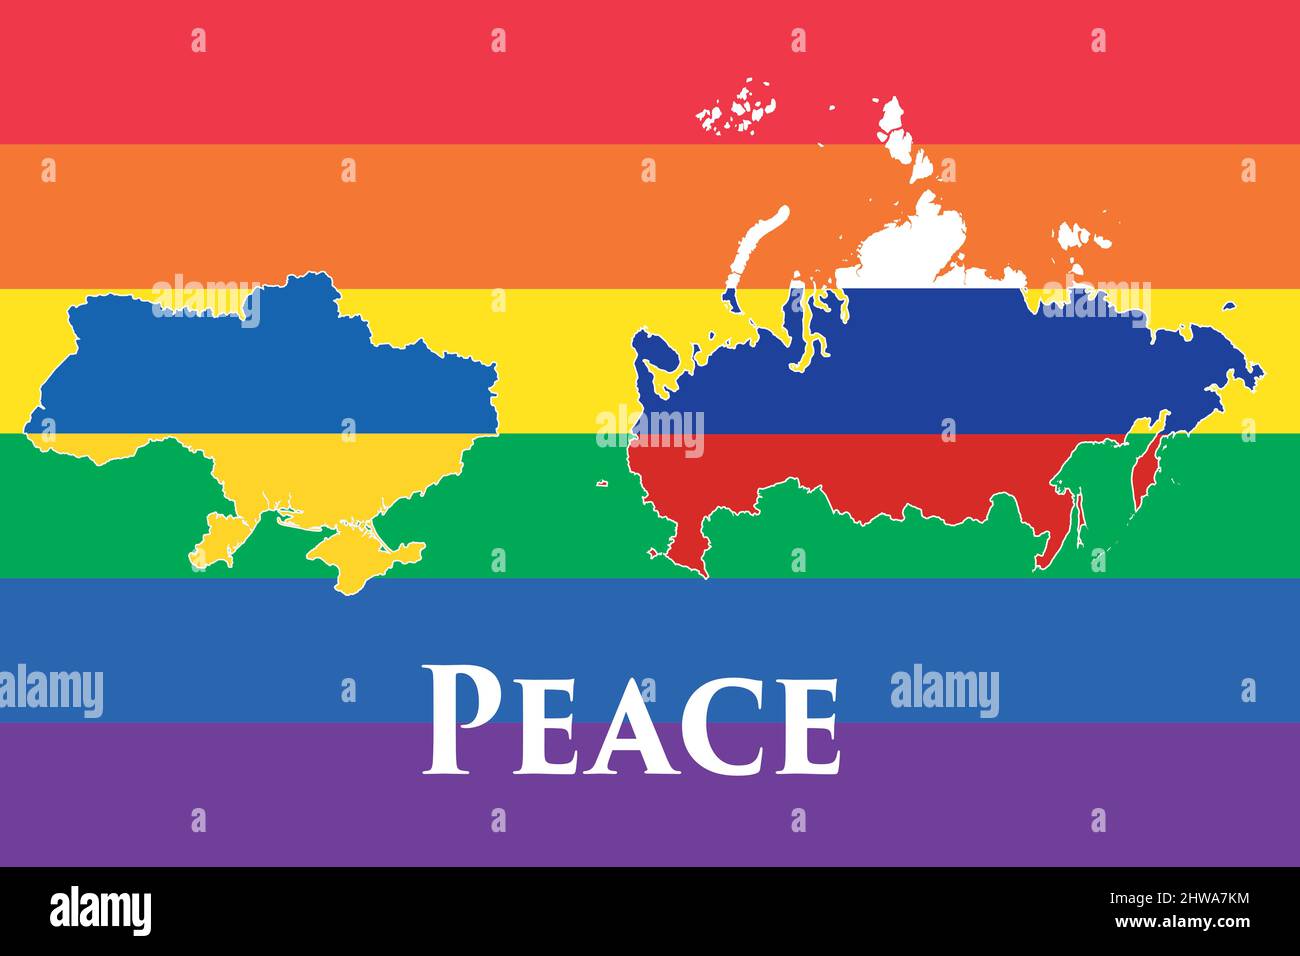 Mappa con la bandiera dell'ucraina e mappa con la bandiera della russia sullo sfondo la bandiera della pace, fermare la guerra. Crisi nelle relazioni internazionali. Guerra Foto Stock